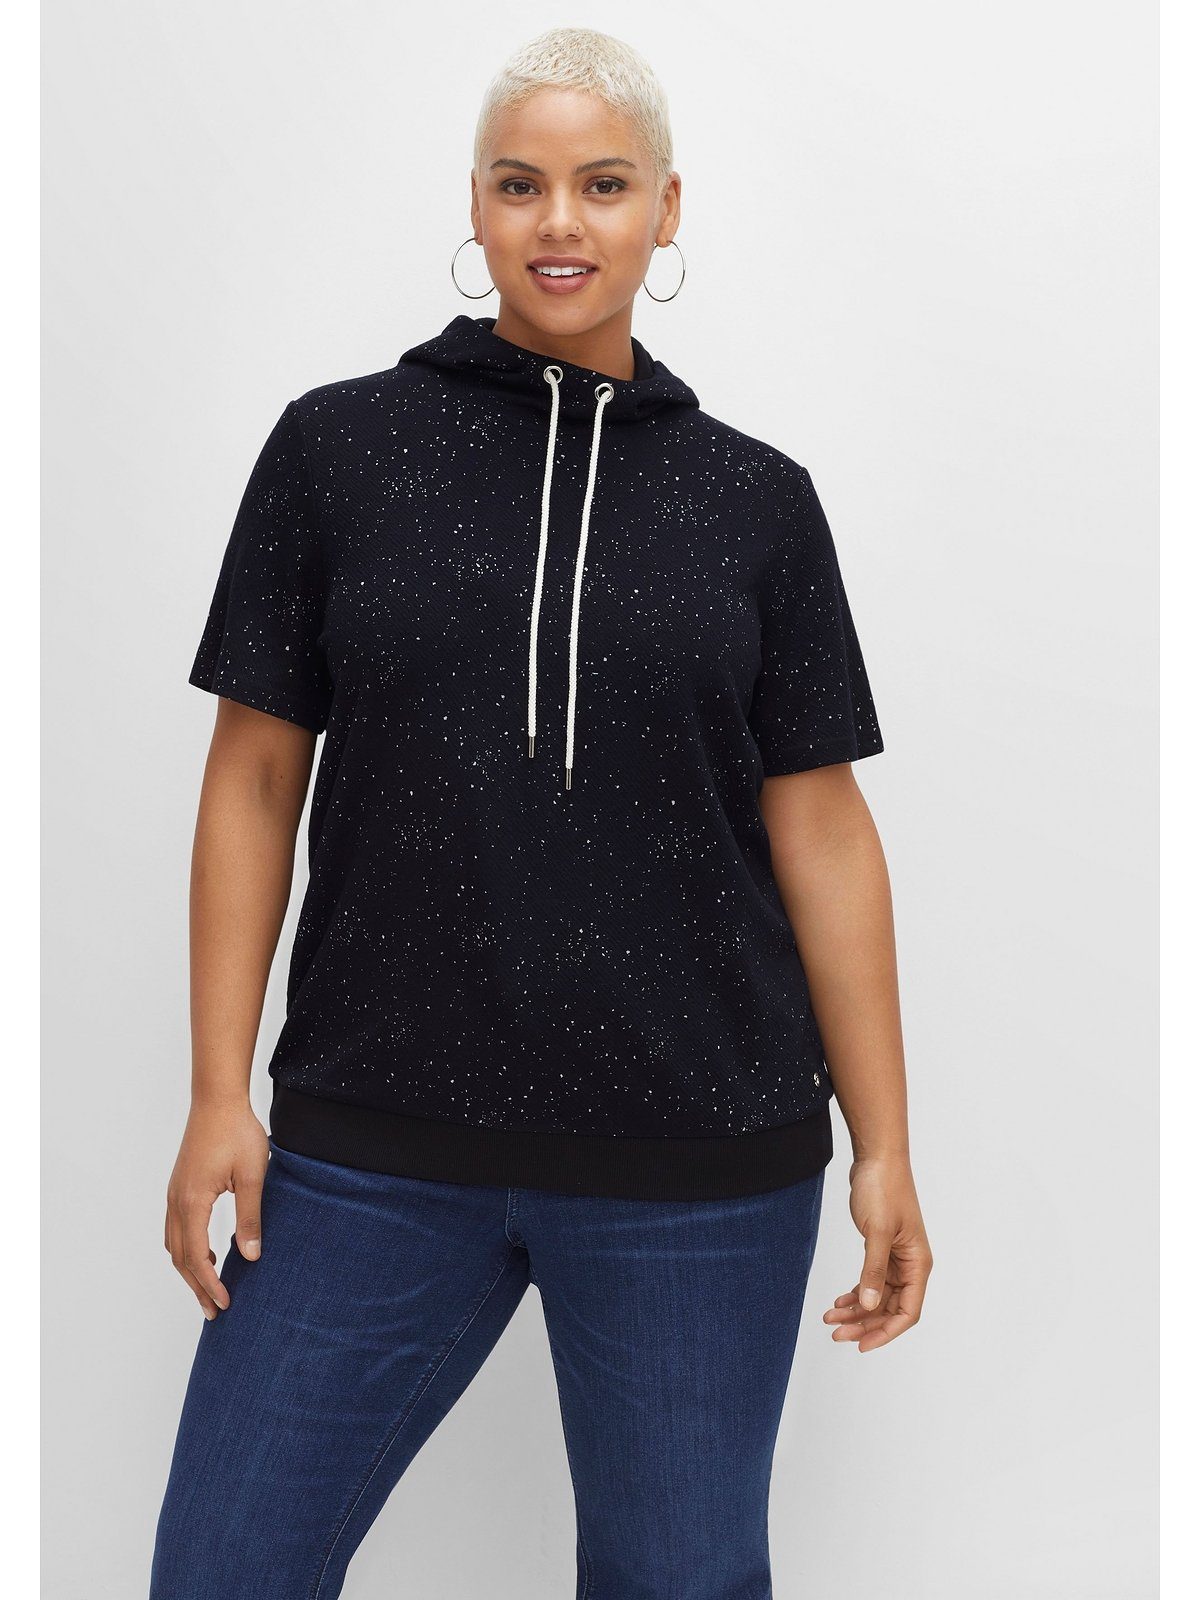 Sheego T-Shirt schwarz Sweatware, Kapuze leichter Größen meliert Große mit aus